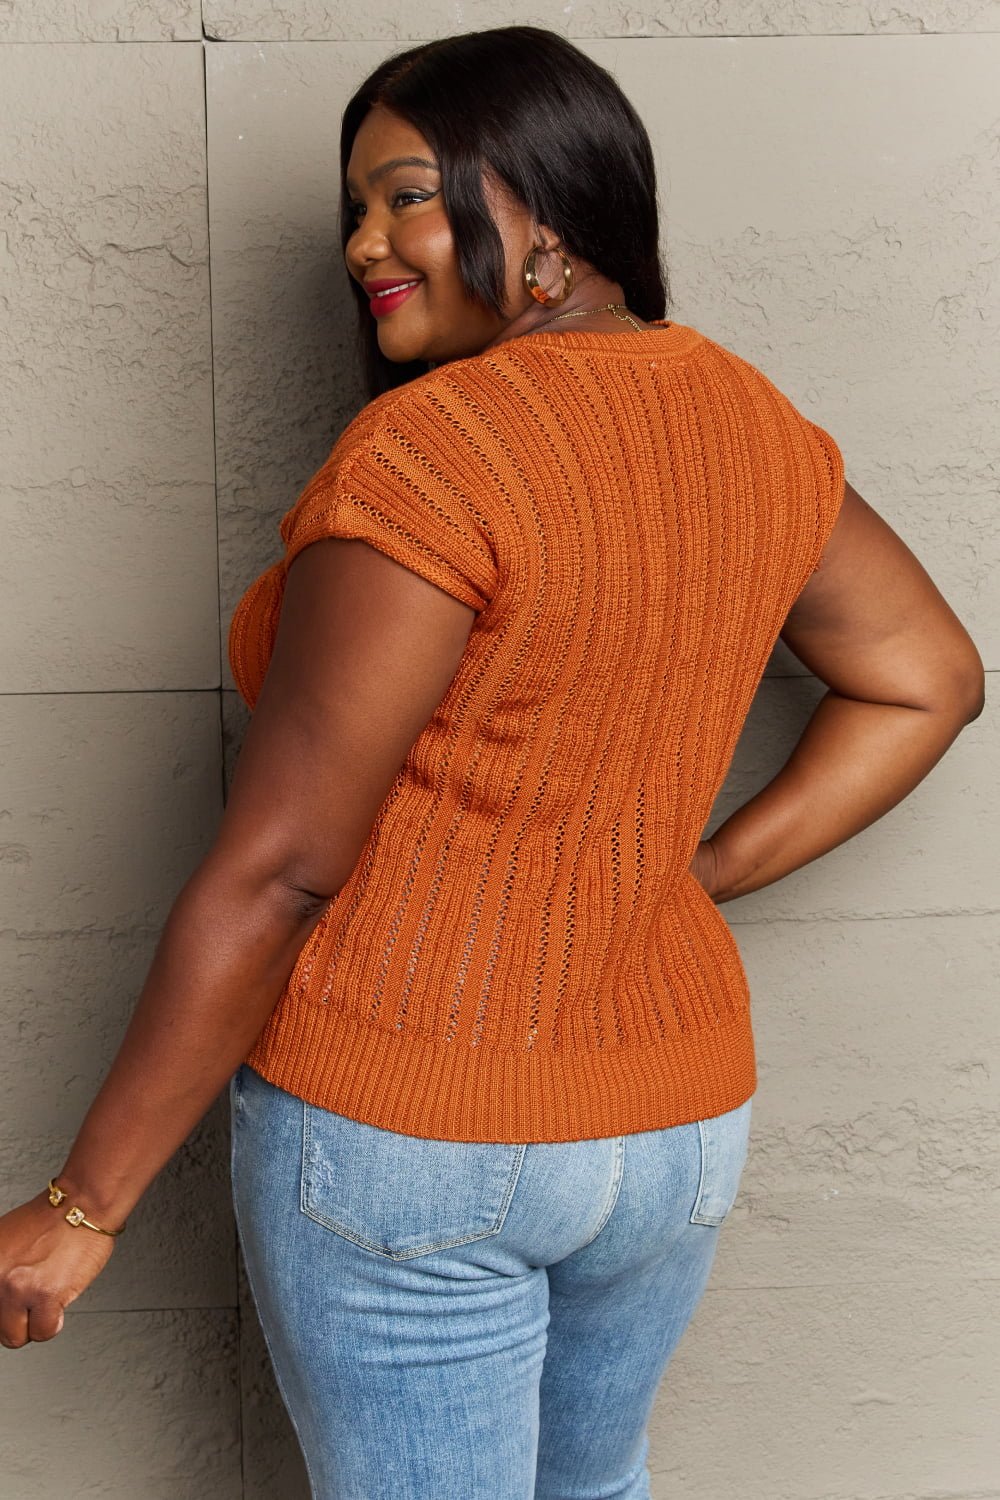 Sew In Love Full Size Preppy Casual Knit Sweater Vest - pvmark